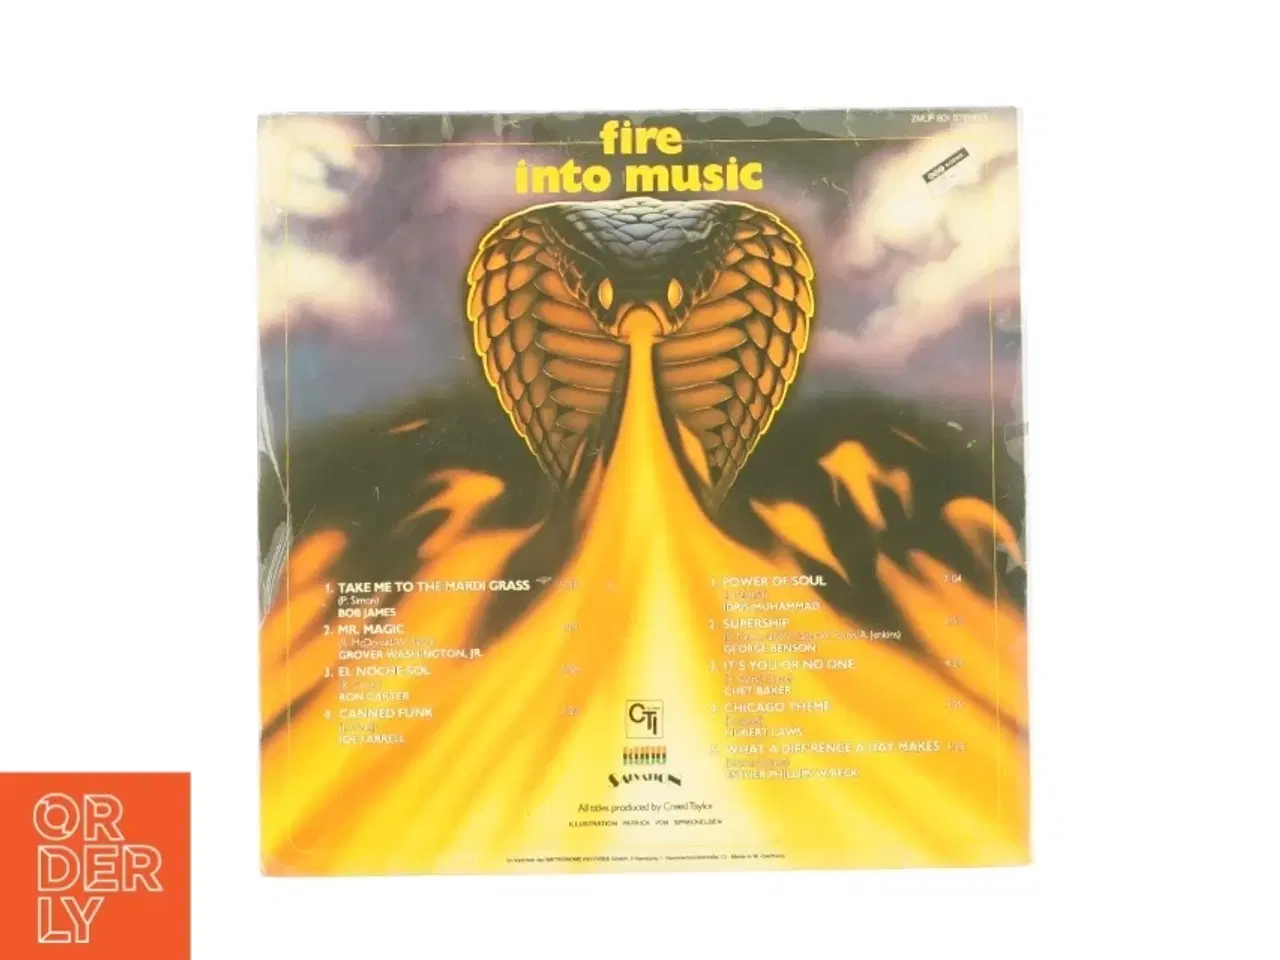 Billede 3 - Fire into music fra LP